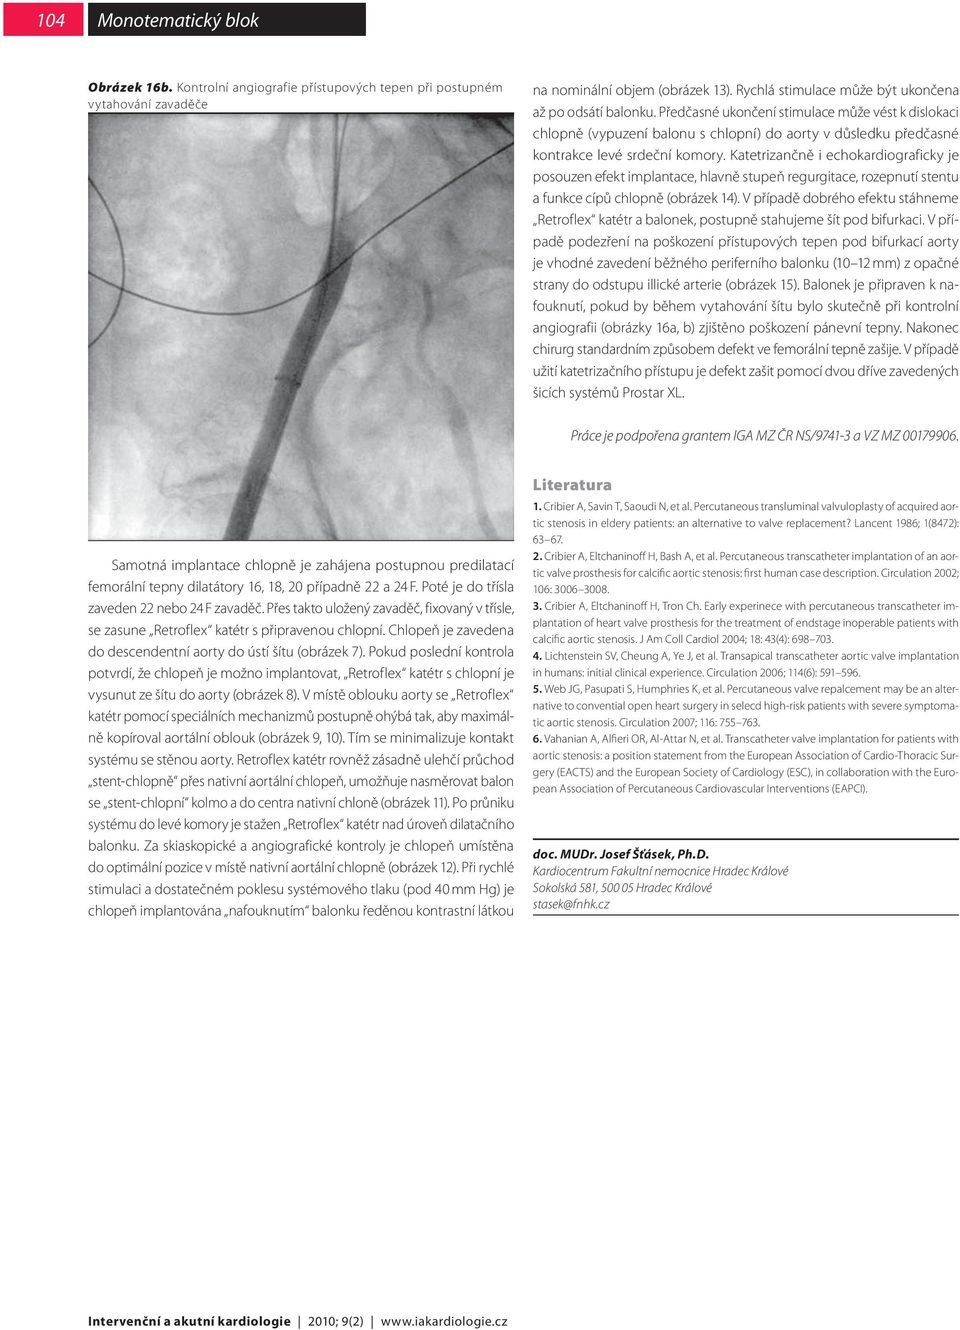 Katetrizančně i echokardiograficky je posouzen efekt implantace, hlavně stupeň regurgitace, rozepnutí stentu a funkce cípů chlopně (obrázek 14).